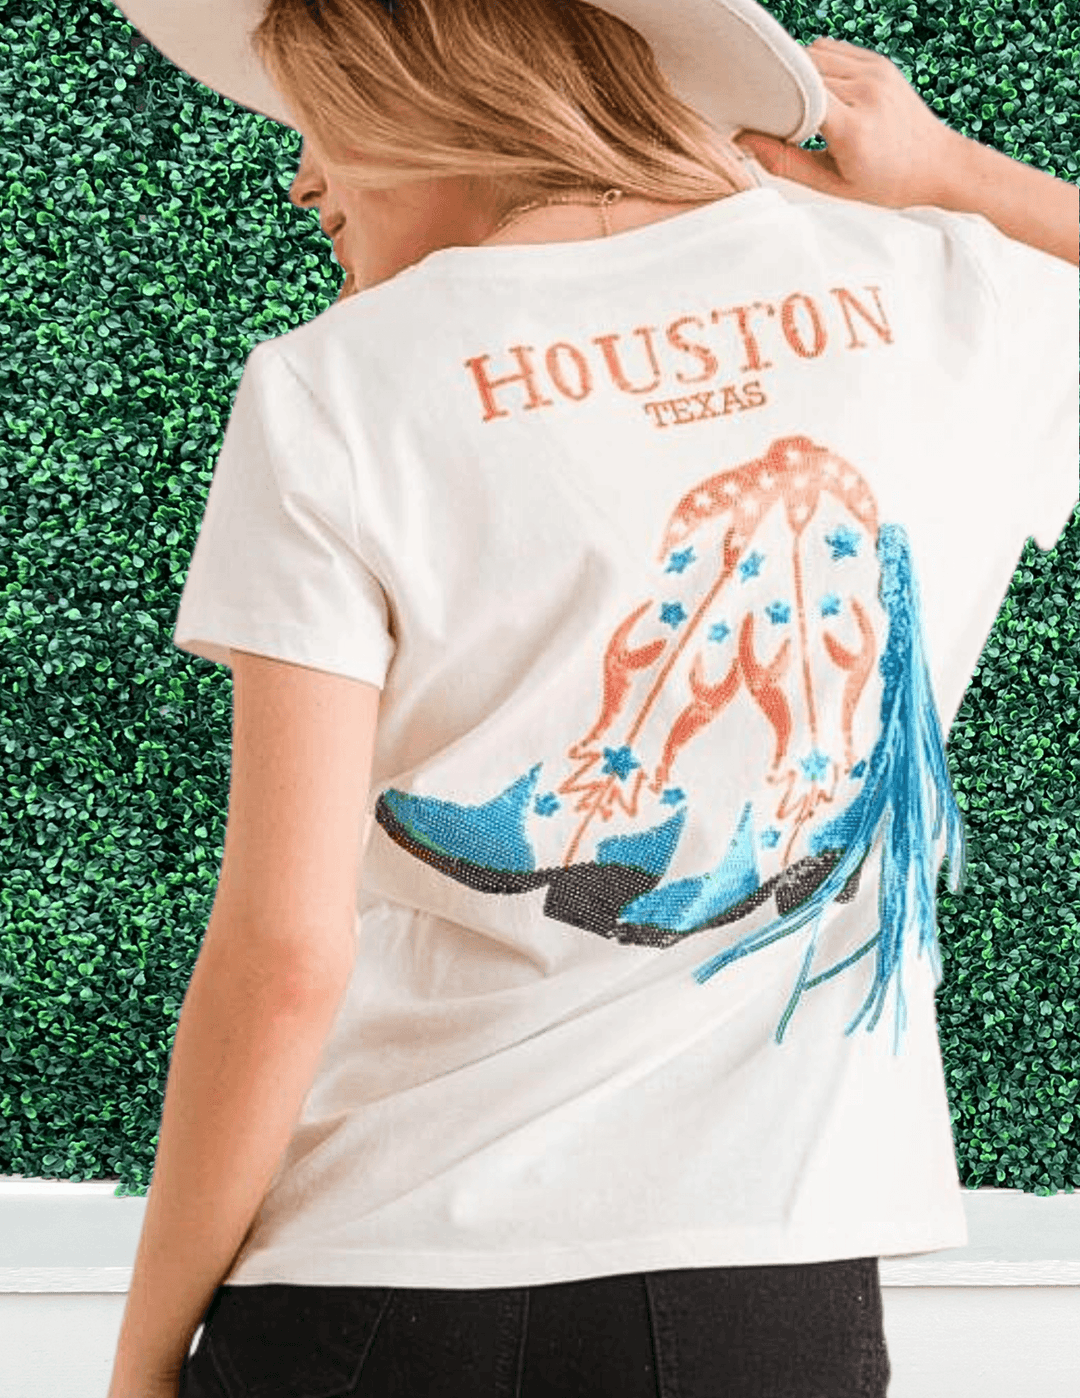 Houston Texas Sequin Astros Tee white womens gift boutique near me